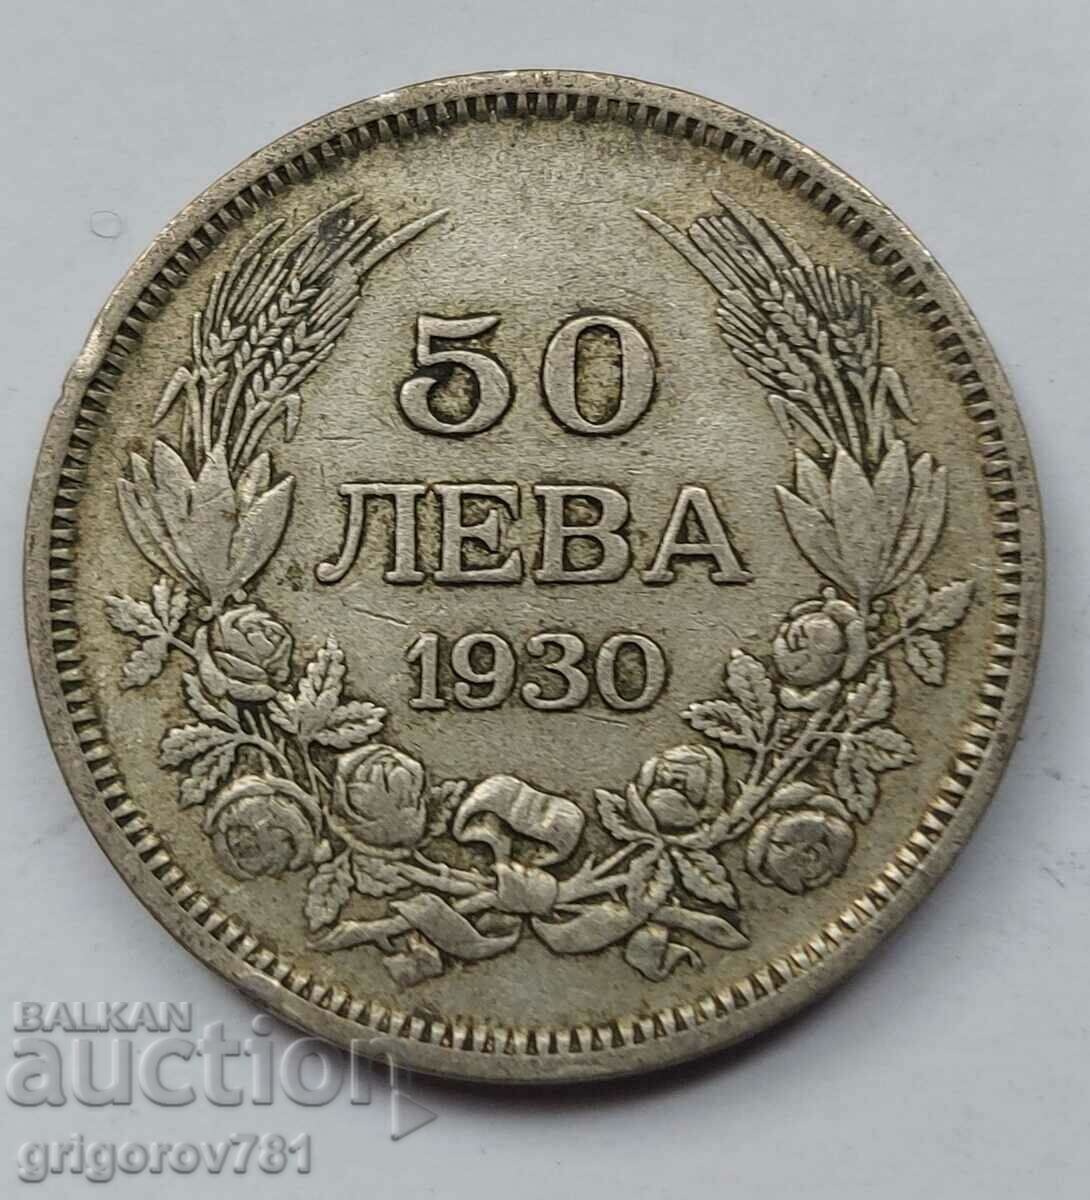 Ασήμι 50 λέβα Βουλγαρία 1930 - ασημένιο νόμισμα #84